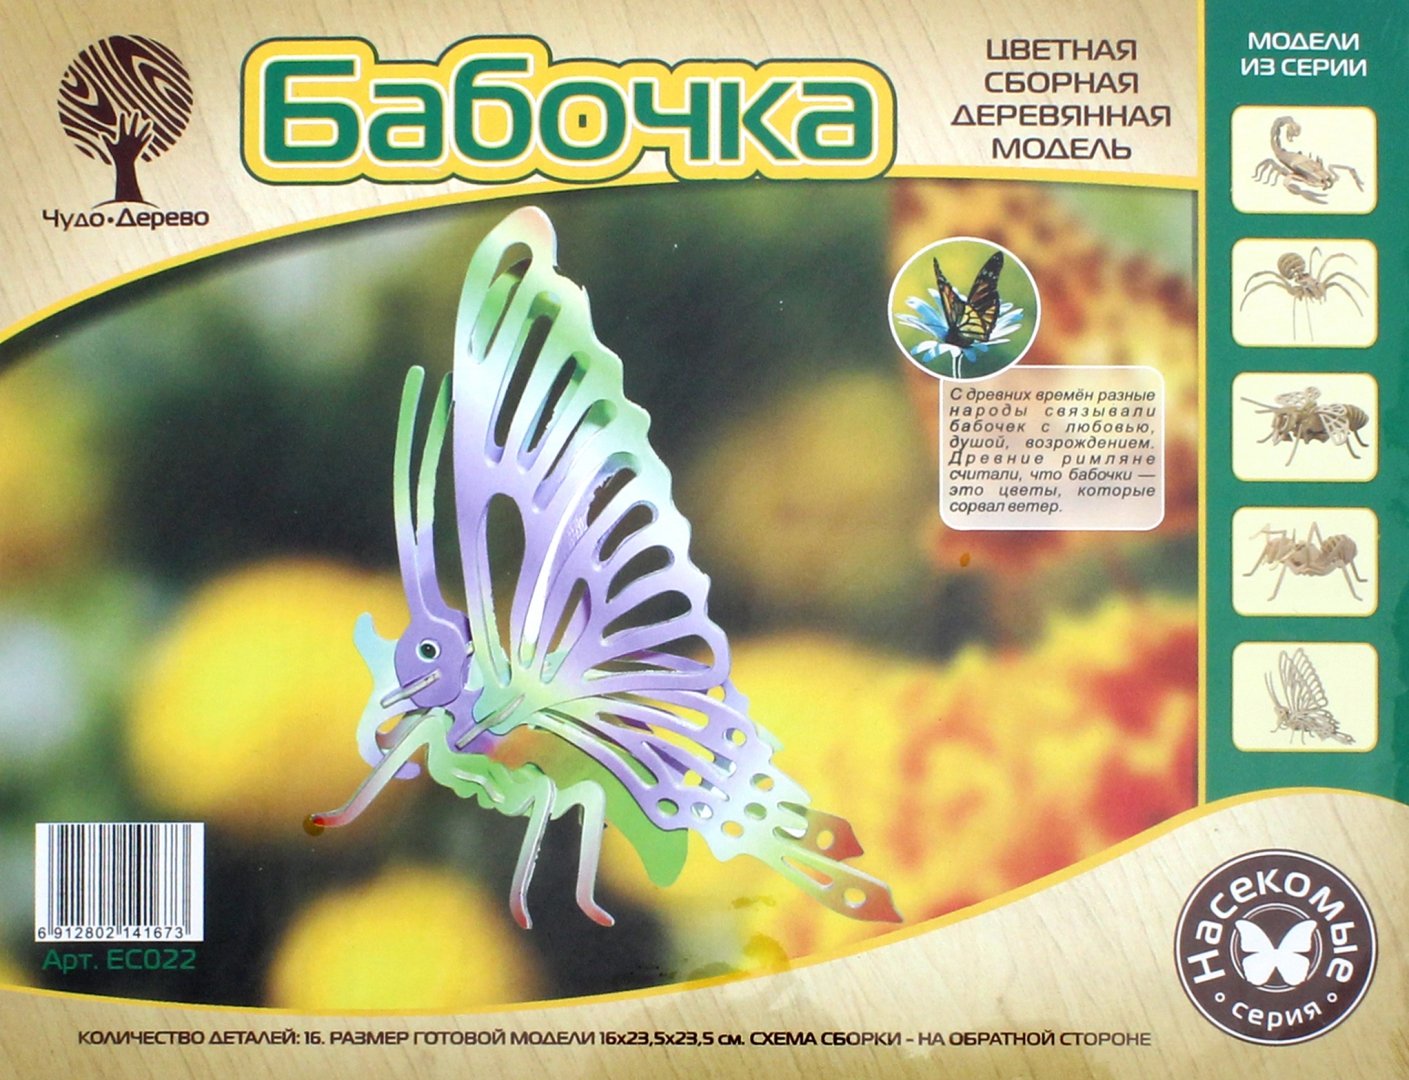 Иллюстрация 1 из 6 для Бабочка малая (EC022) | Лабиринт - игрушки. Источник: Лабиринт